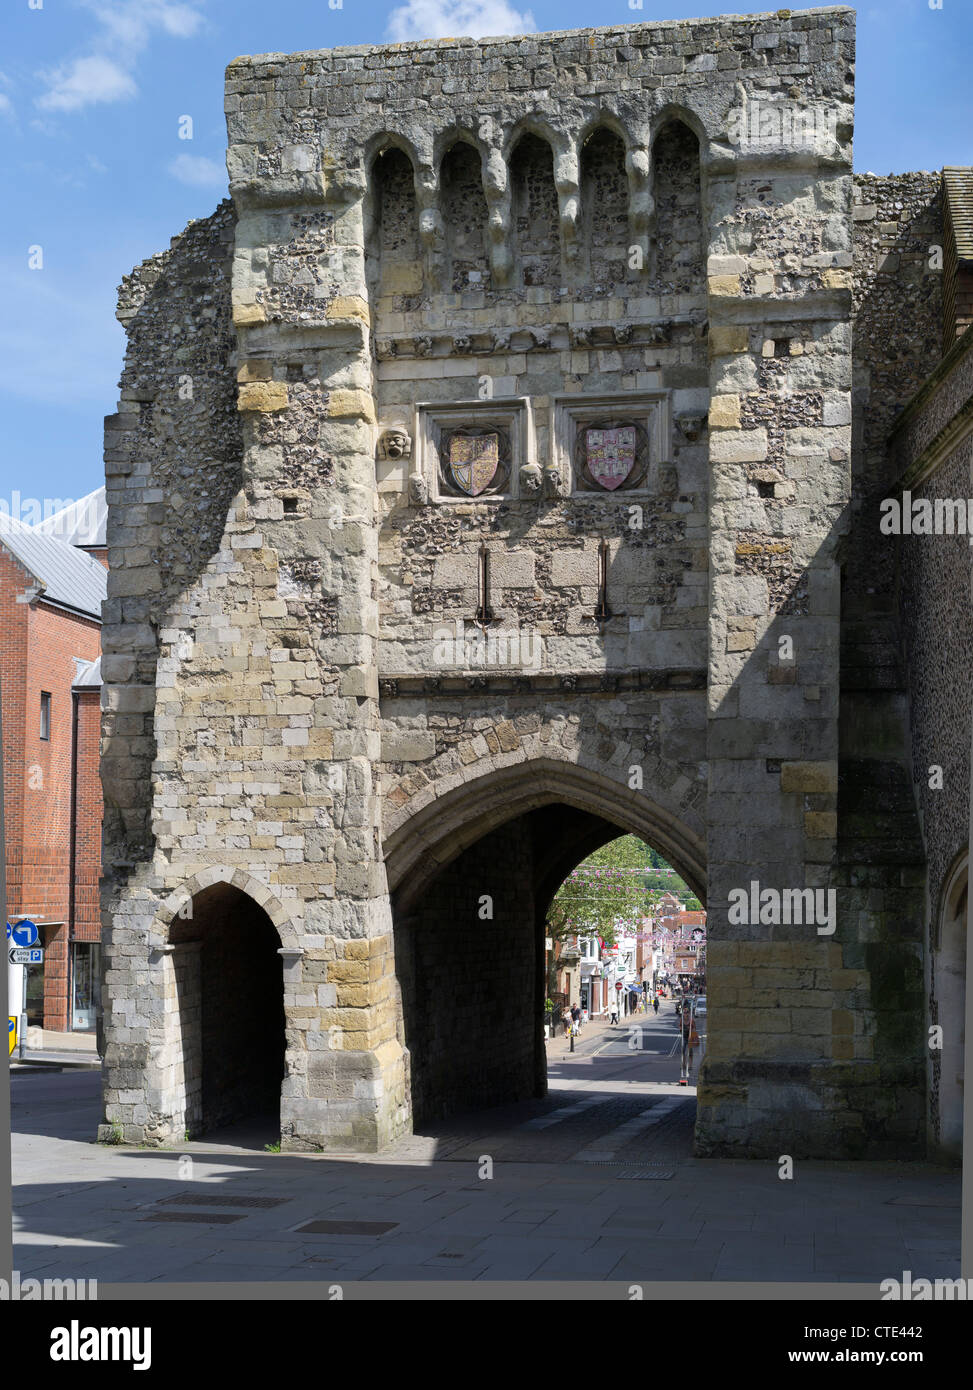 Dh Westgate Winchester, Hampshire Mittelalterlichen gateway Wände Torbogen Eingang City Großbritannien Stockfoto